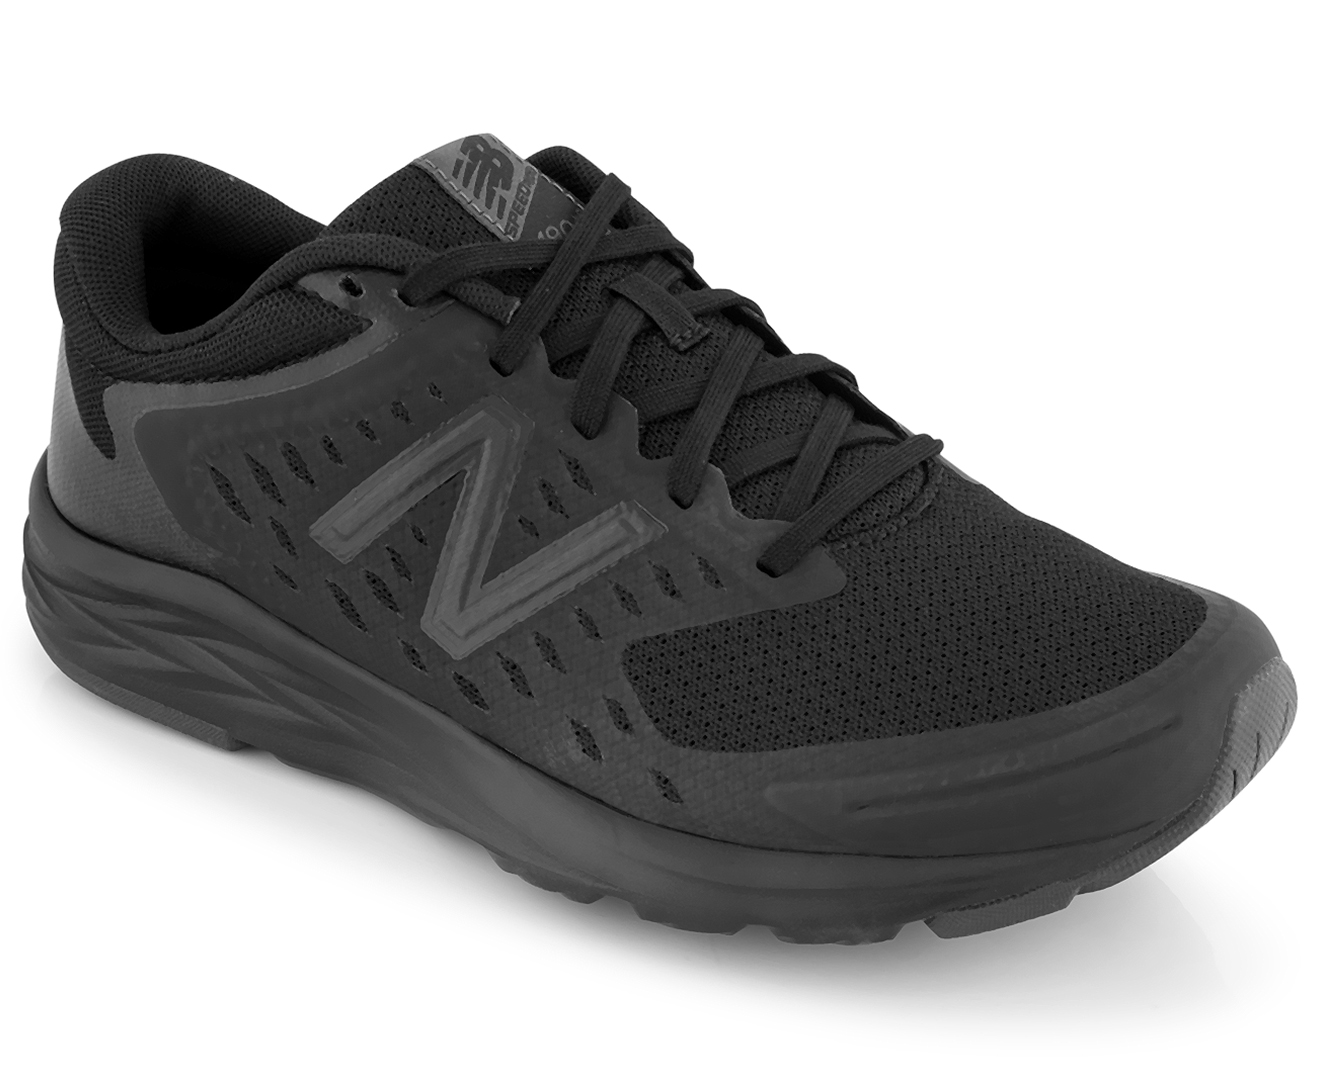 New Balance Women's 490 V5 Wide Fit Running Shoe - Black/Phantom ...